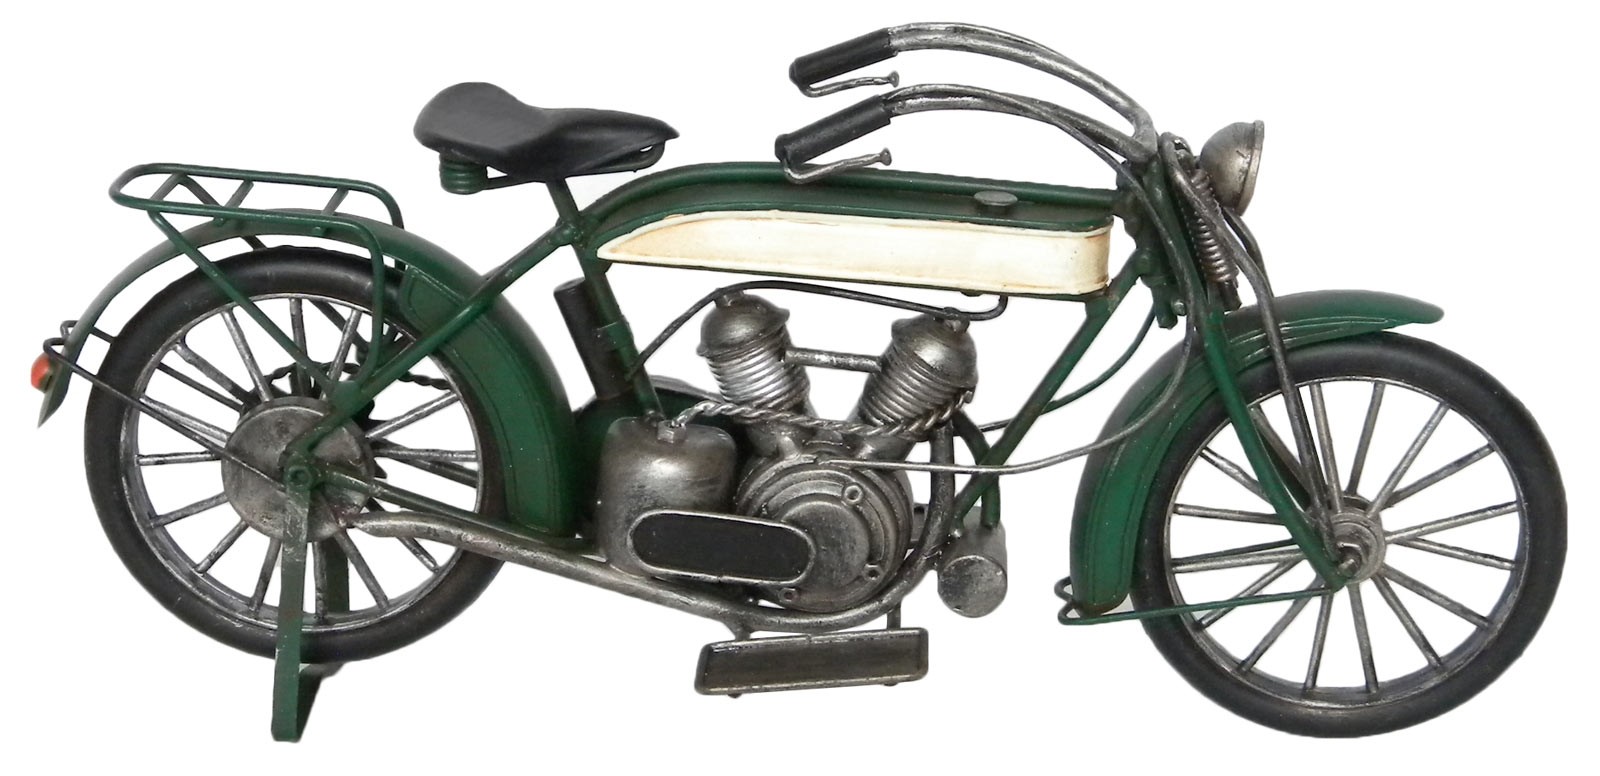 Vintage Motorcycle - 31cm